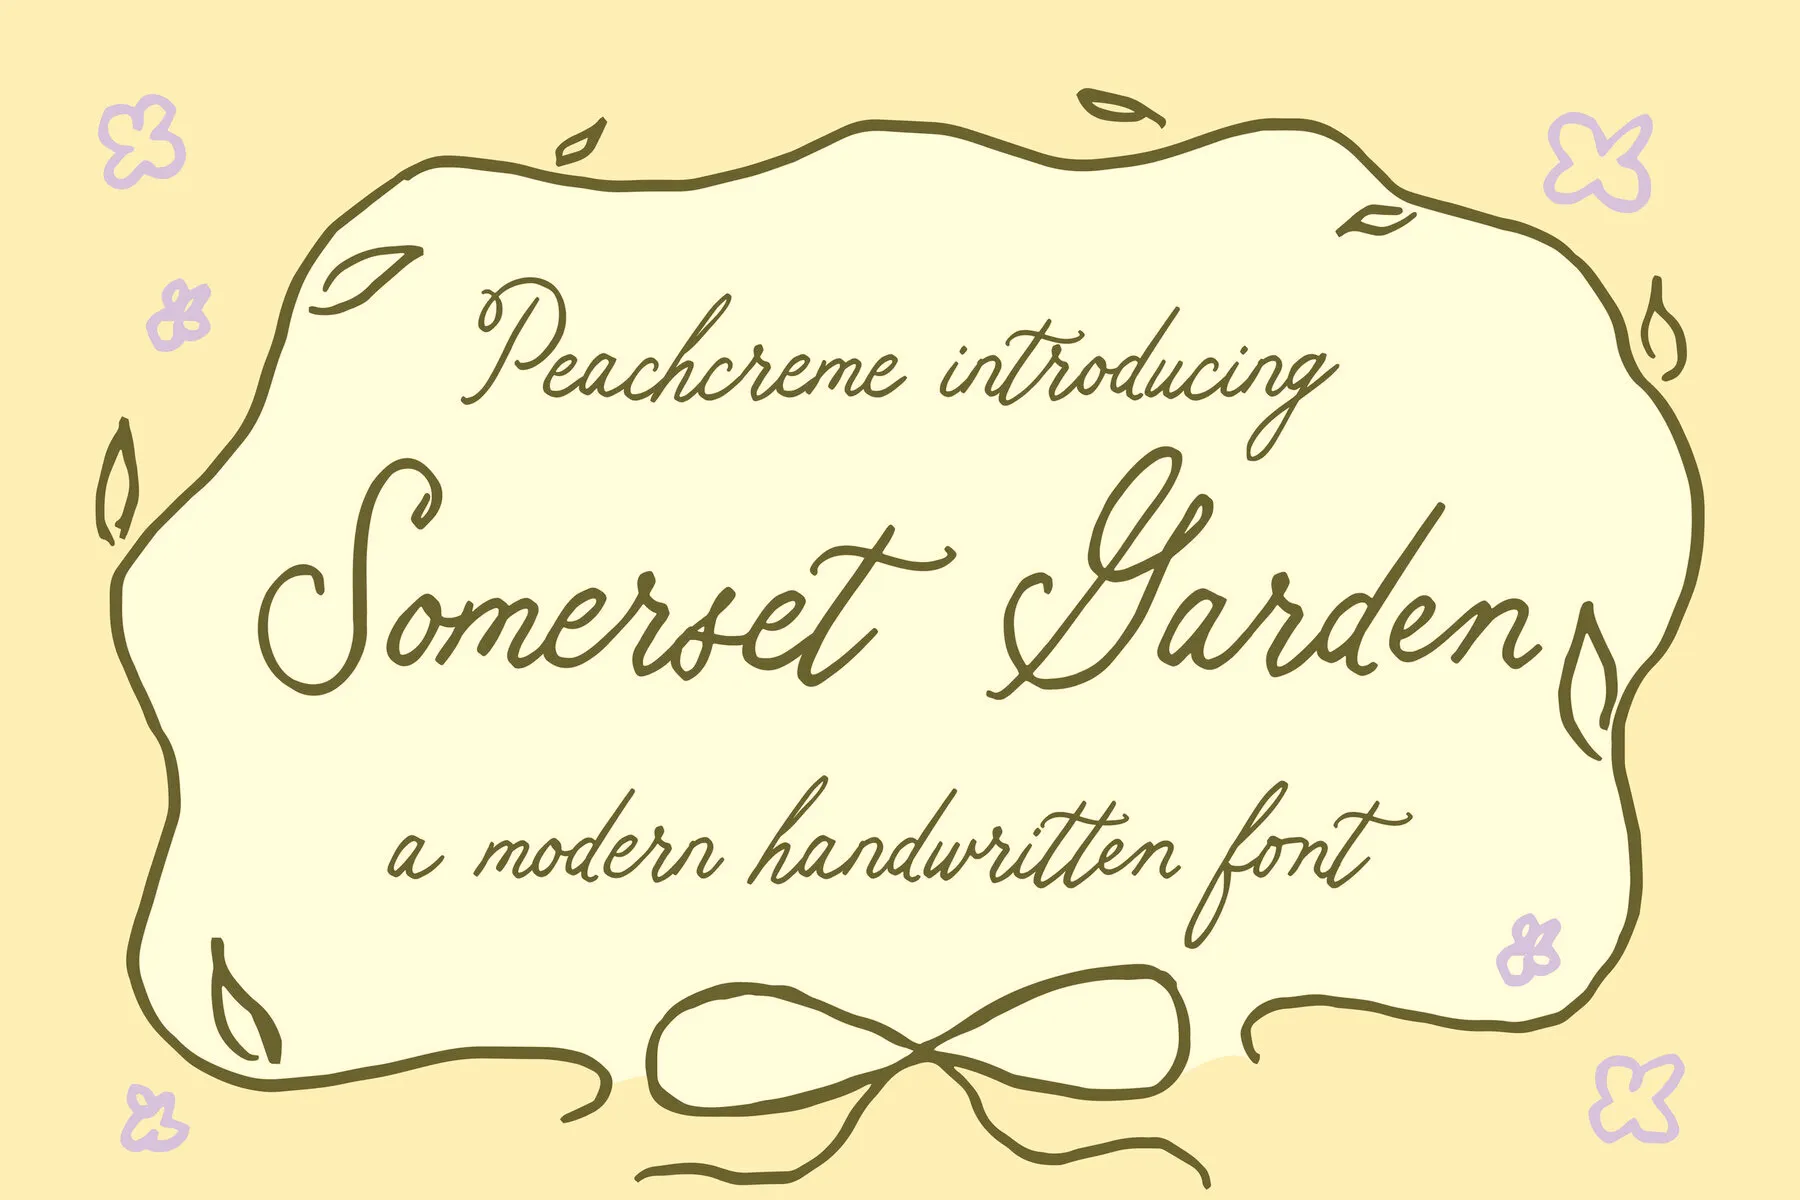 Somerset Garden